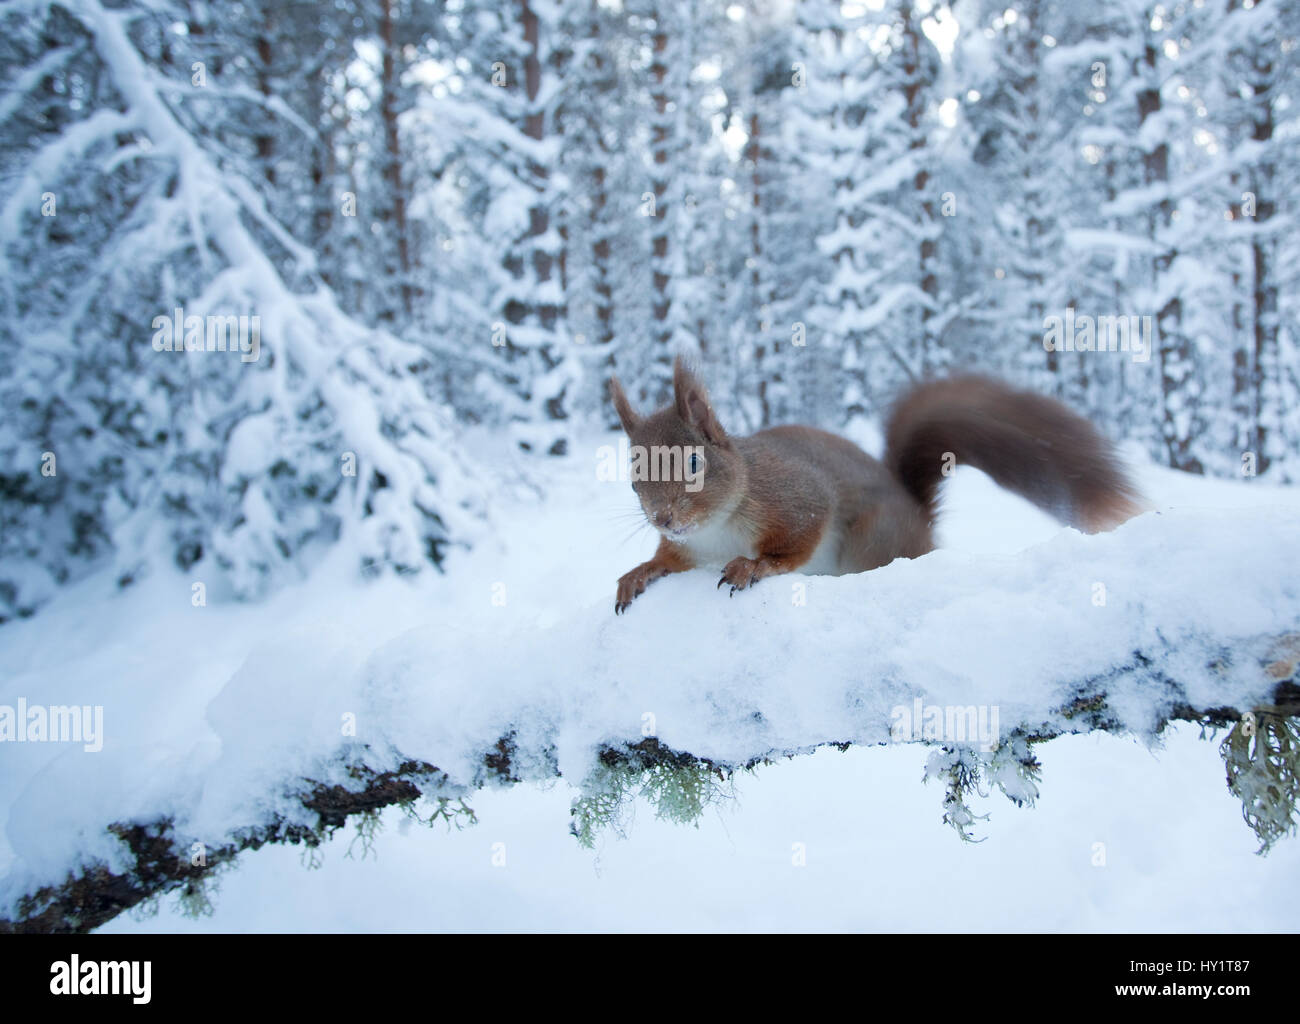 Red scoiattolo (Sciurus vulgaris) sulla coperta di neve ramo nella foresta di pini, Glenfeshie station wagon, Cairngorms National Park, Highlands, Scozia, gennaio. Foto Stock